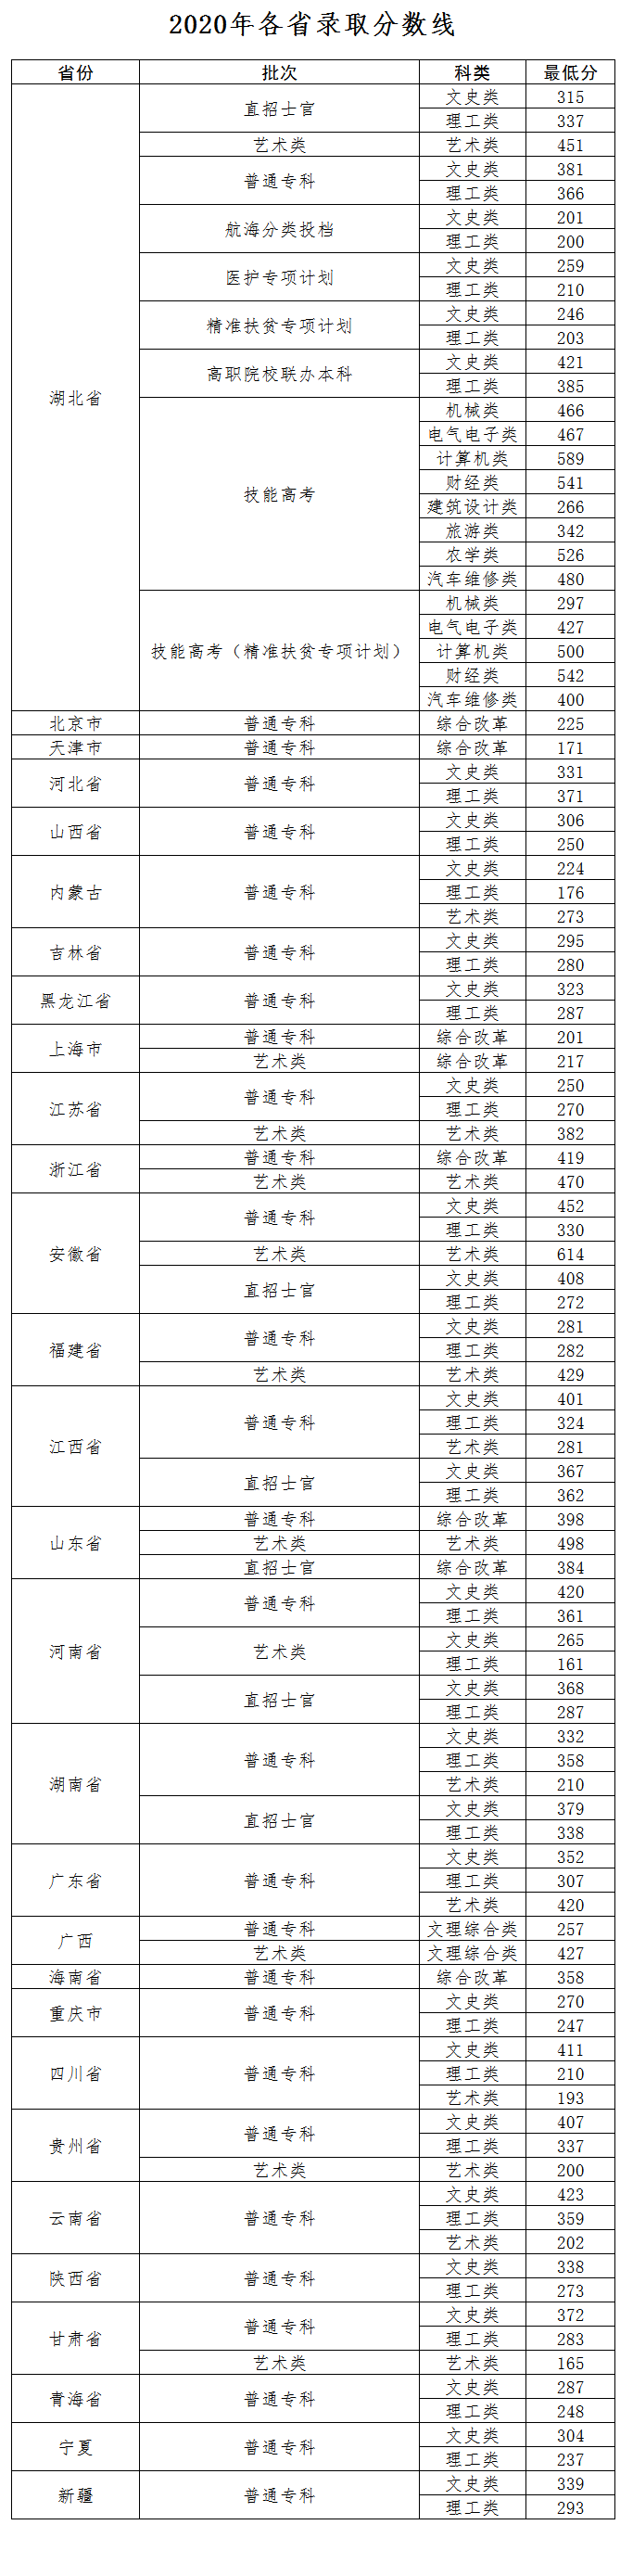 2021年武汉交通职业学院专业最低分和最低录取位次排名多少,附历年最低分数据